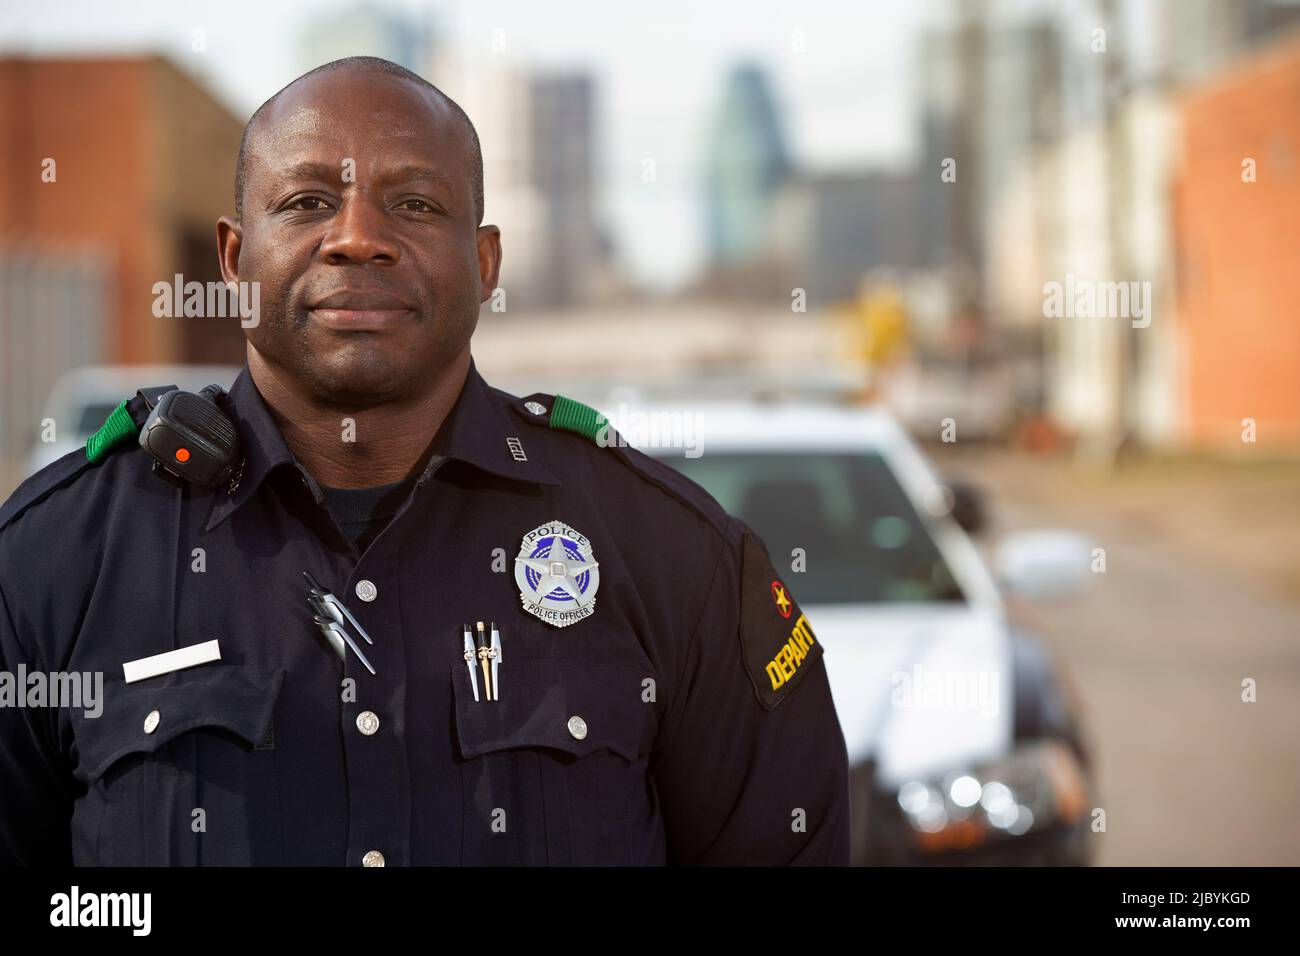 Portrait de l'officier de police debout dans la rue devant la voiture de l'escouade regardant vers la caméra avec les bras derrière son dos Banque D'Images